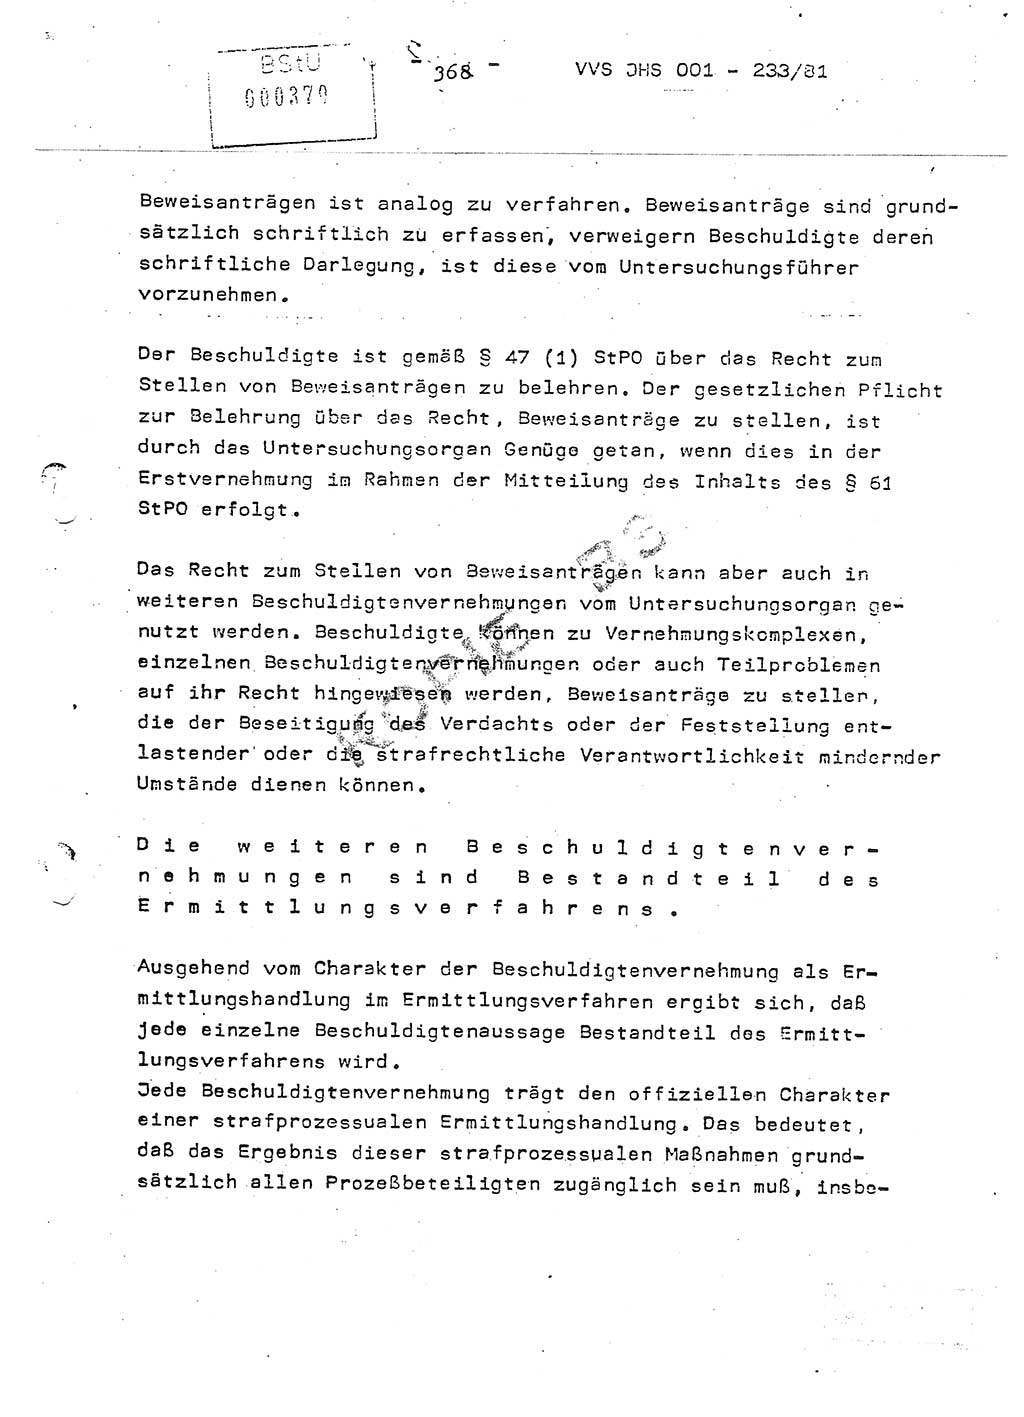 Dissertation Oberstleutnant Horst Zank (JHS), Oberstleutnant Dr. Karl-Heinz Knoblauch (JHS), Oberstleutnant Gustav-Adolf Kowalewski (HA Ⅸ), Oberstleutnant Wolfgang Plötner (HA Ⅸ), Ministerium für Staatssicherheit (MfS) [Deutsche Demokratische Republik (DDR)], Juristische Hochschule (JHS), Vertrauliche Verschlußsache (VVS) o001-233/81, Potsdam 1981, Blatt 368 (Diss. MfS DDR JHS VVS o001-233/81 1981, Bl. 368)